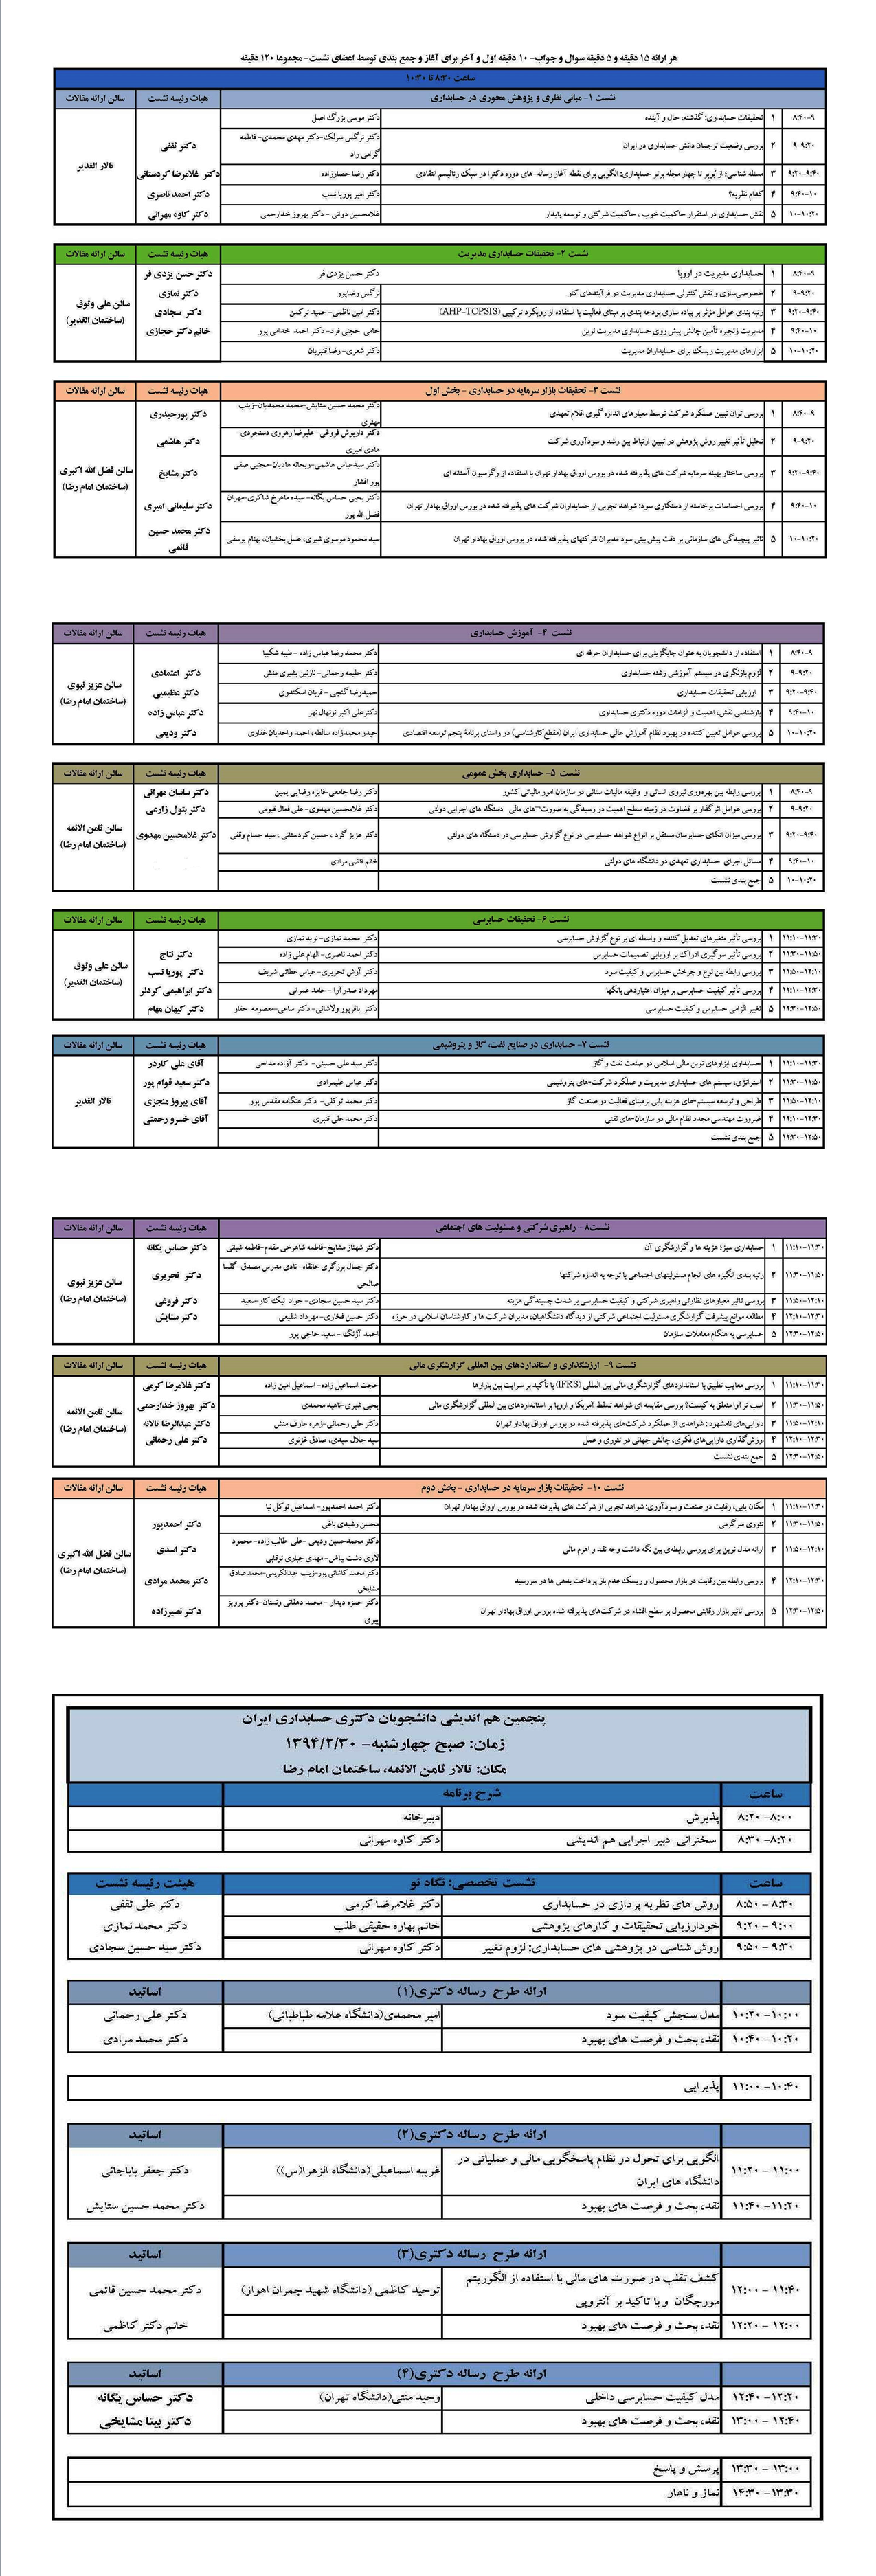 جزئیات سیزدهمین همایش ملی حسابداری ایران و پنجمین هم اندیشی دانشجویان دکتری حسابداری